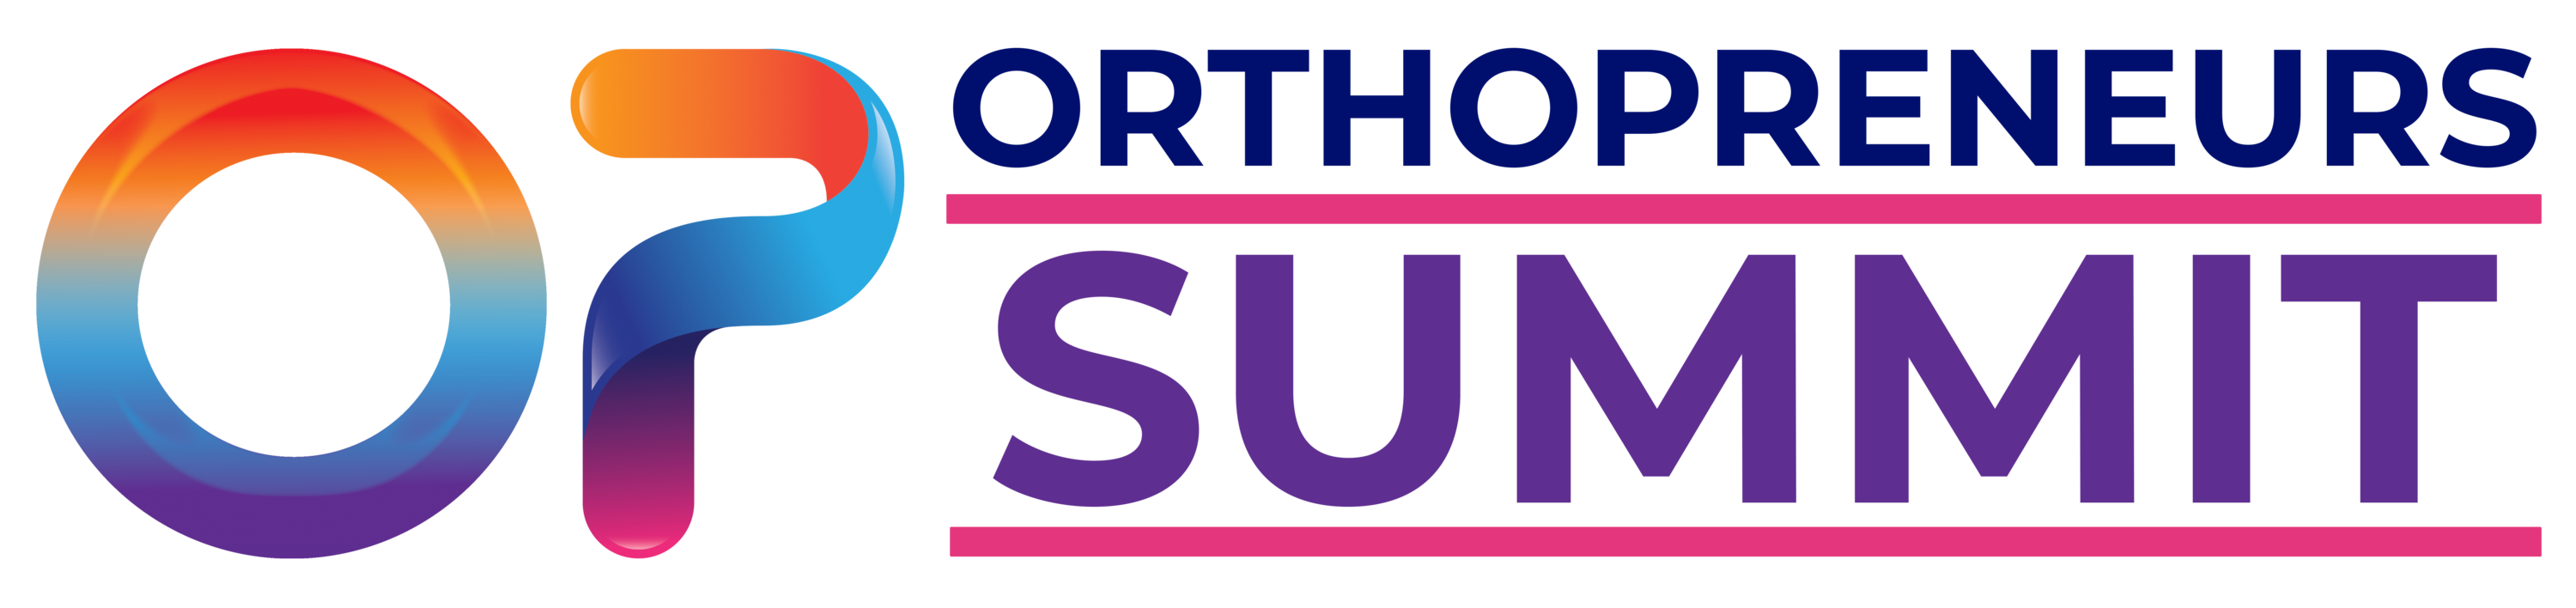 The 2021 OrthoPreneurs Summit